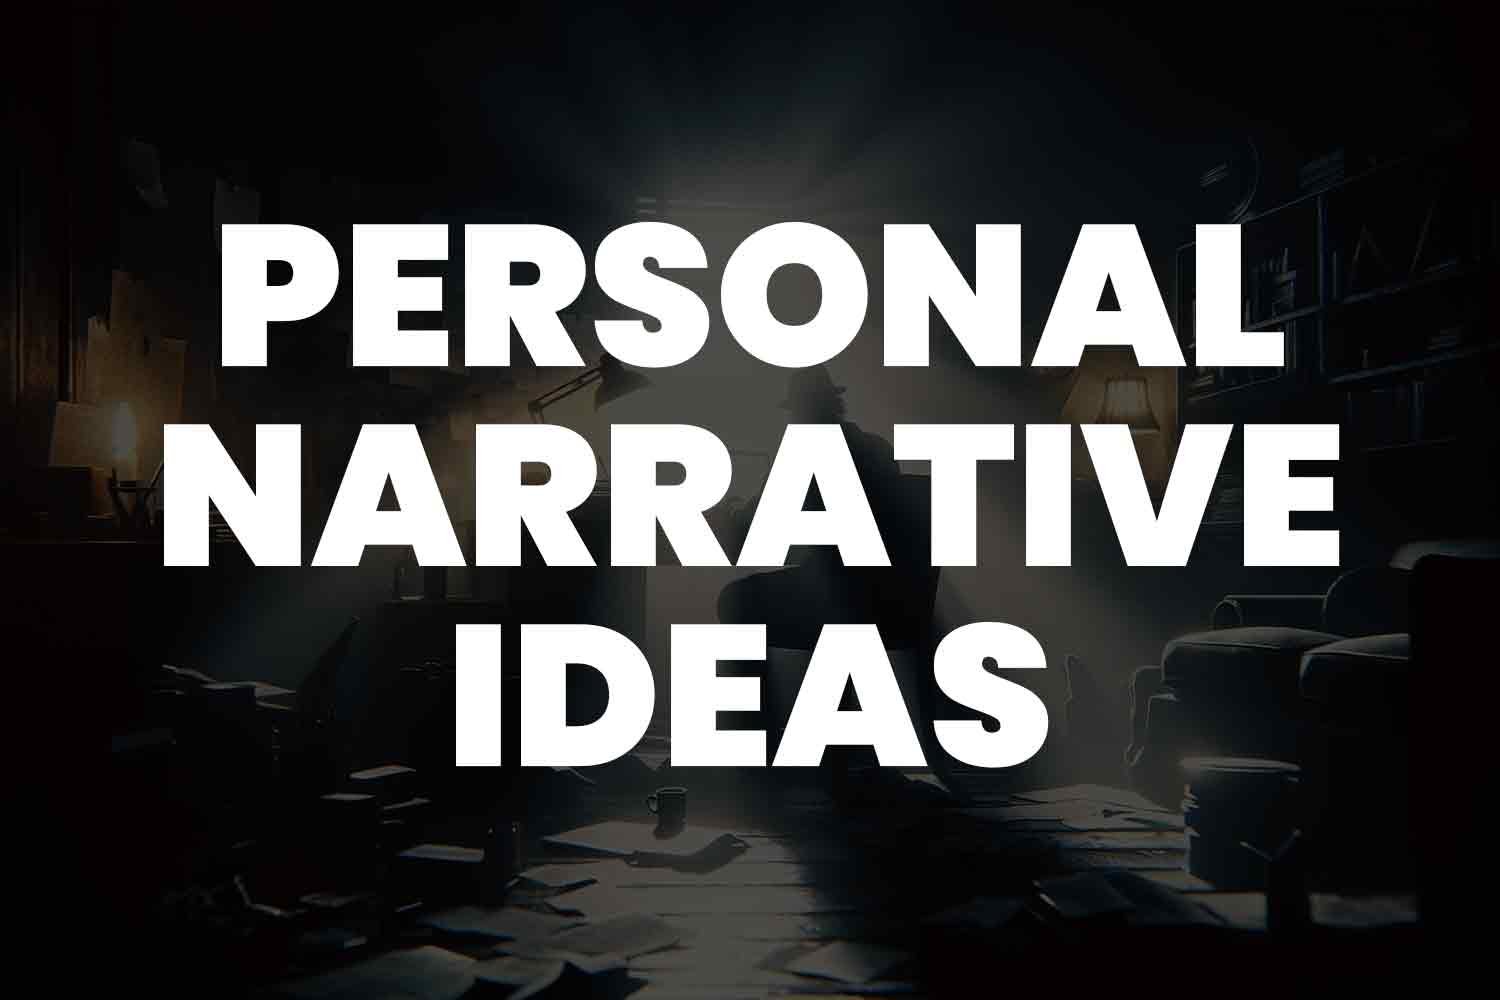 Personal narrative ideas